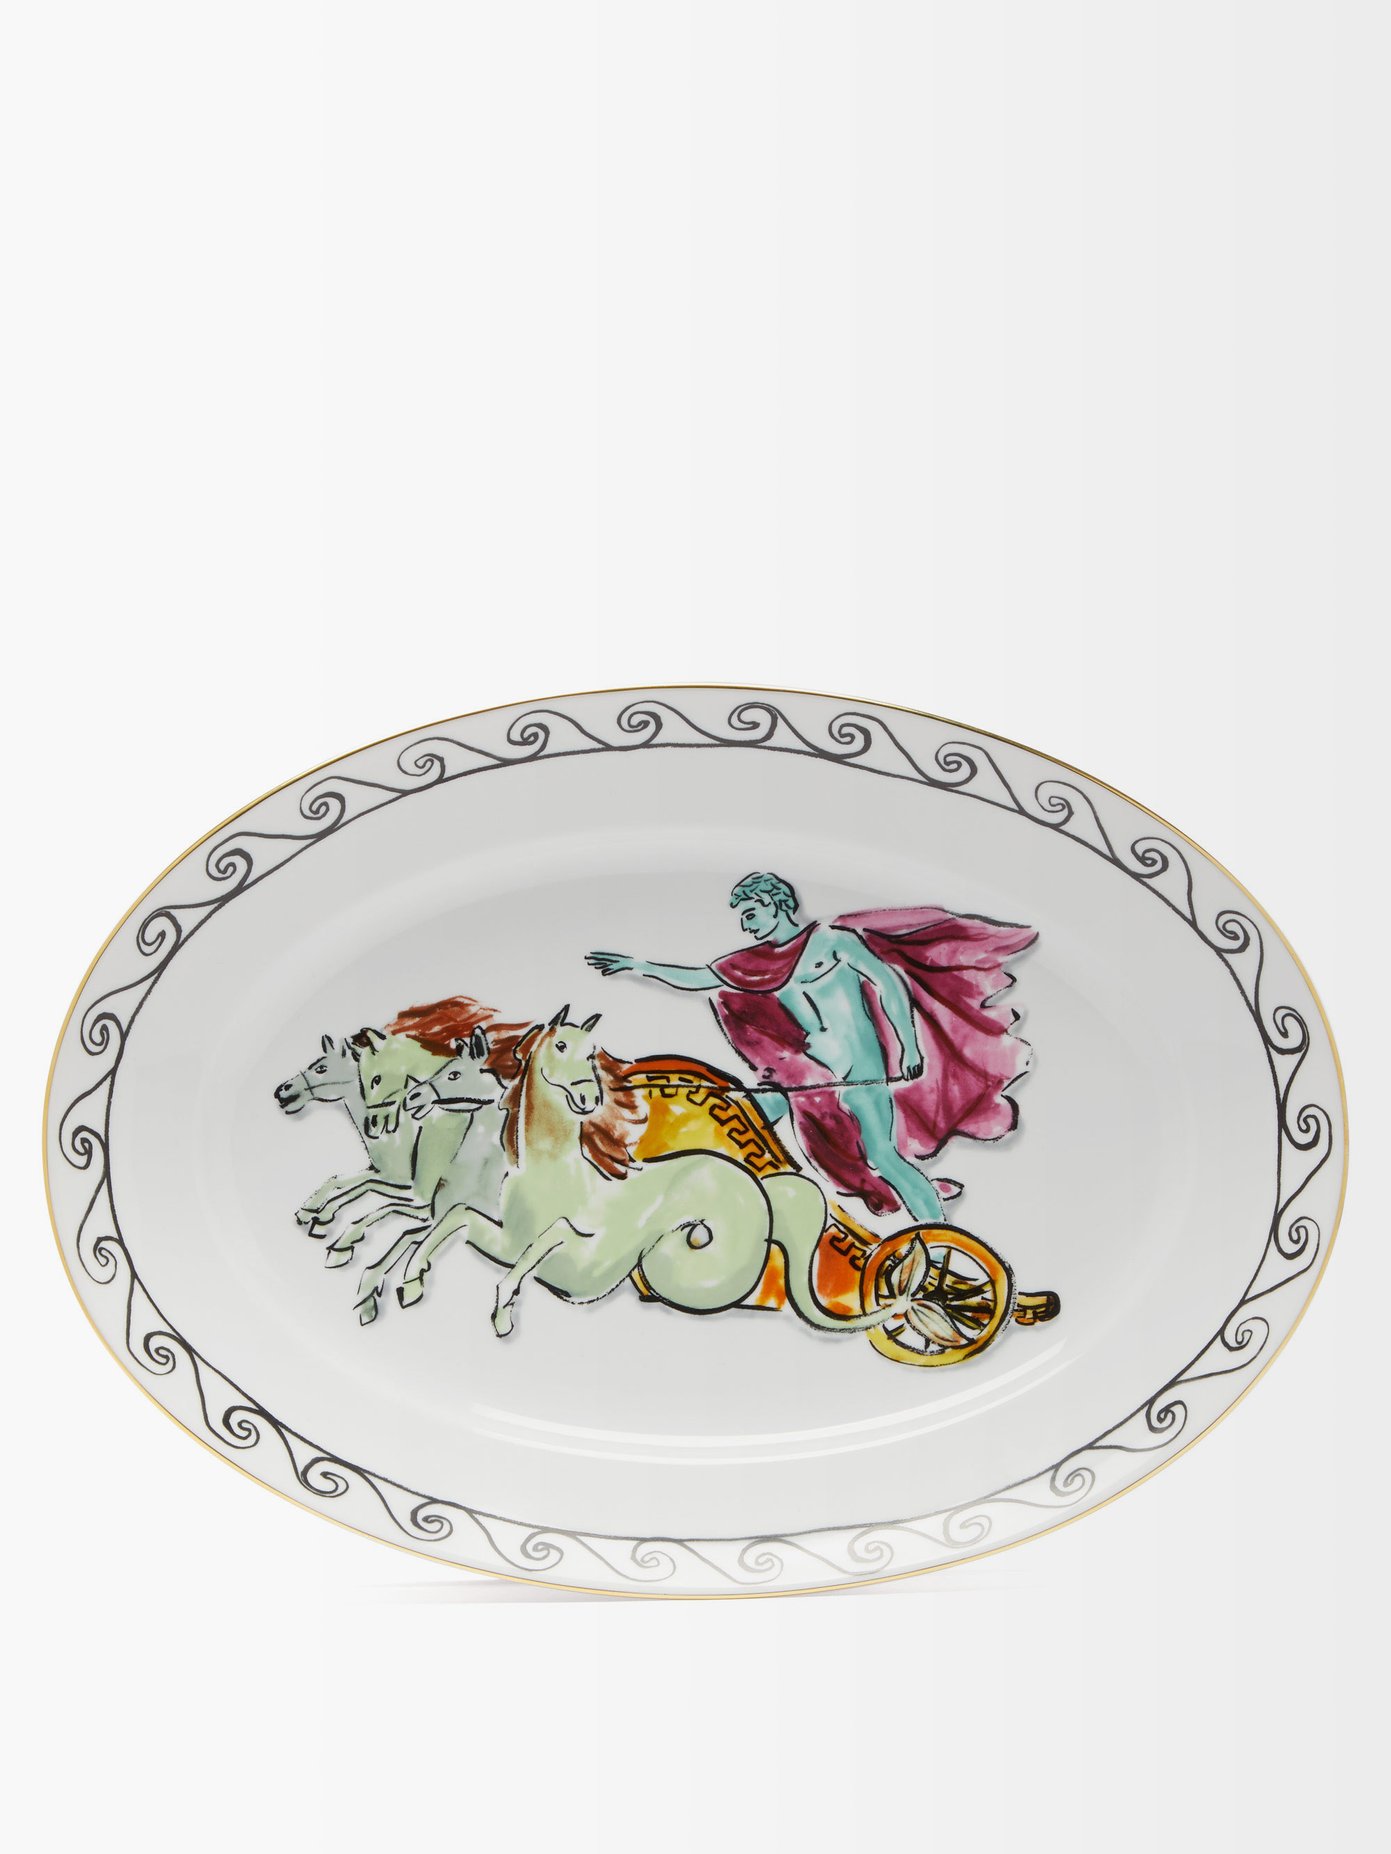 X Luke Edward Hall oval chariot porcelain platter | Ginori 1735 